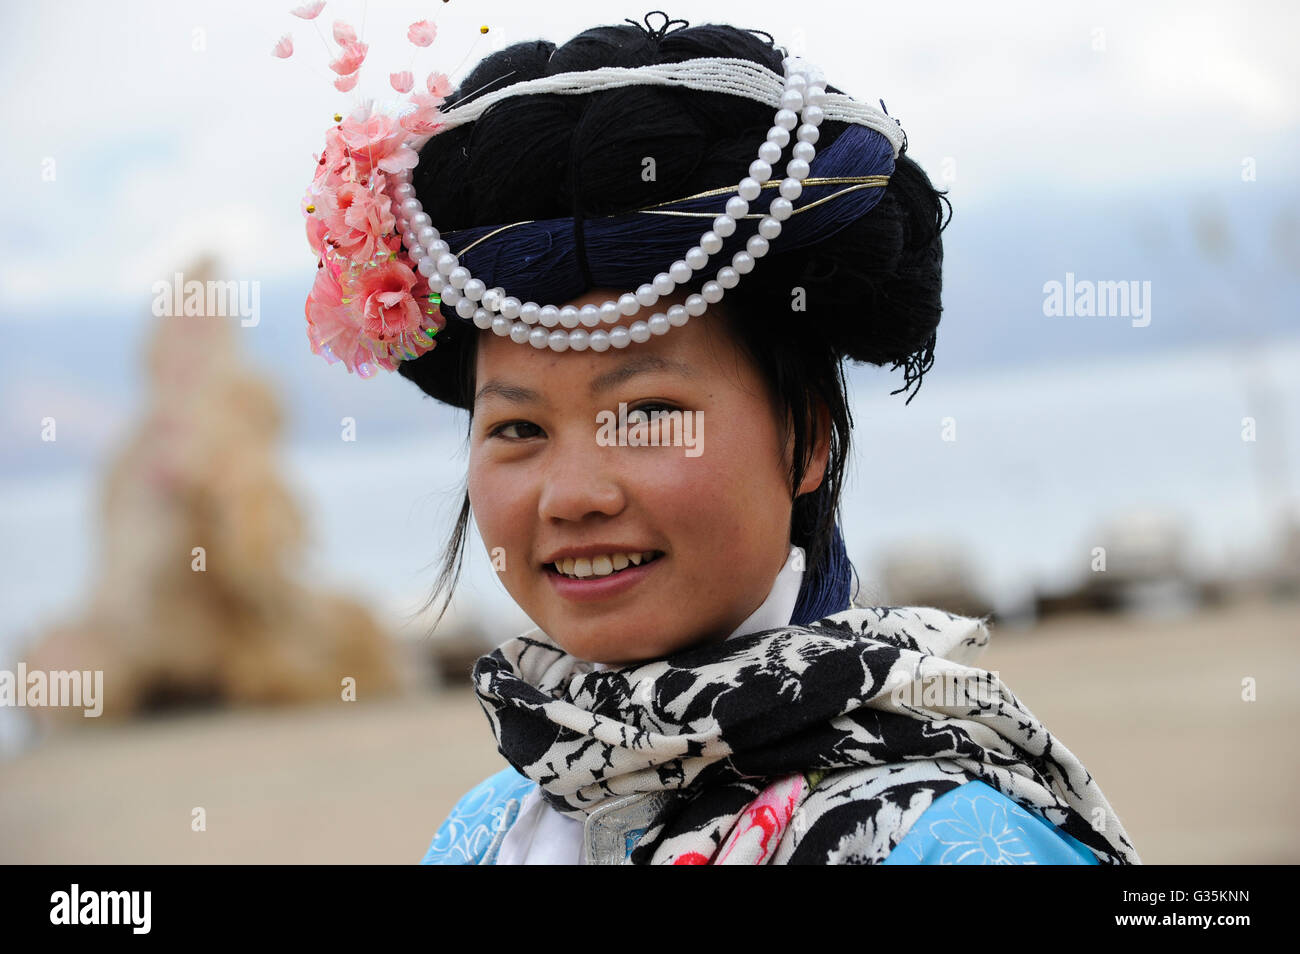 CHINE Yunnan Lugu Lake , minorité ethnique Mosuo qui sont bouddhistes et les femmes ont une matriarche, Mosuo femme dans les vêtements traditionnels , société matriarcale Banque D'Images